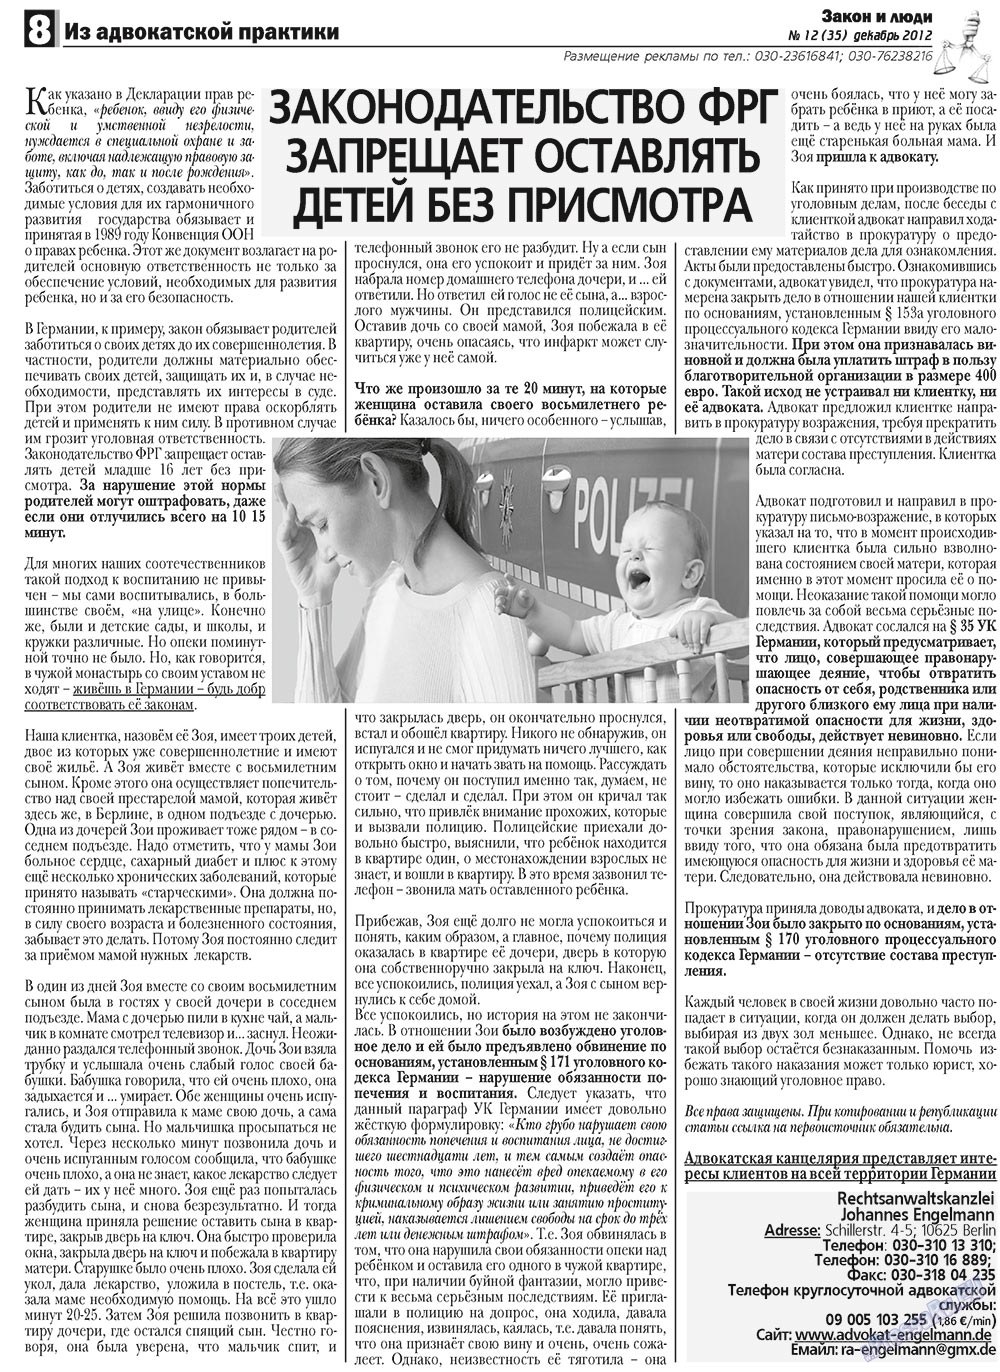 Закон и люди, газета. 2012 №12 стр.8